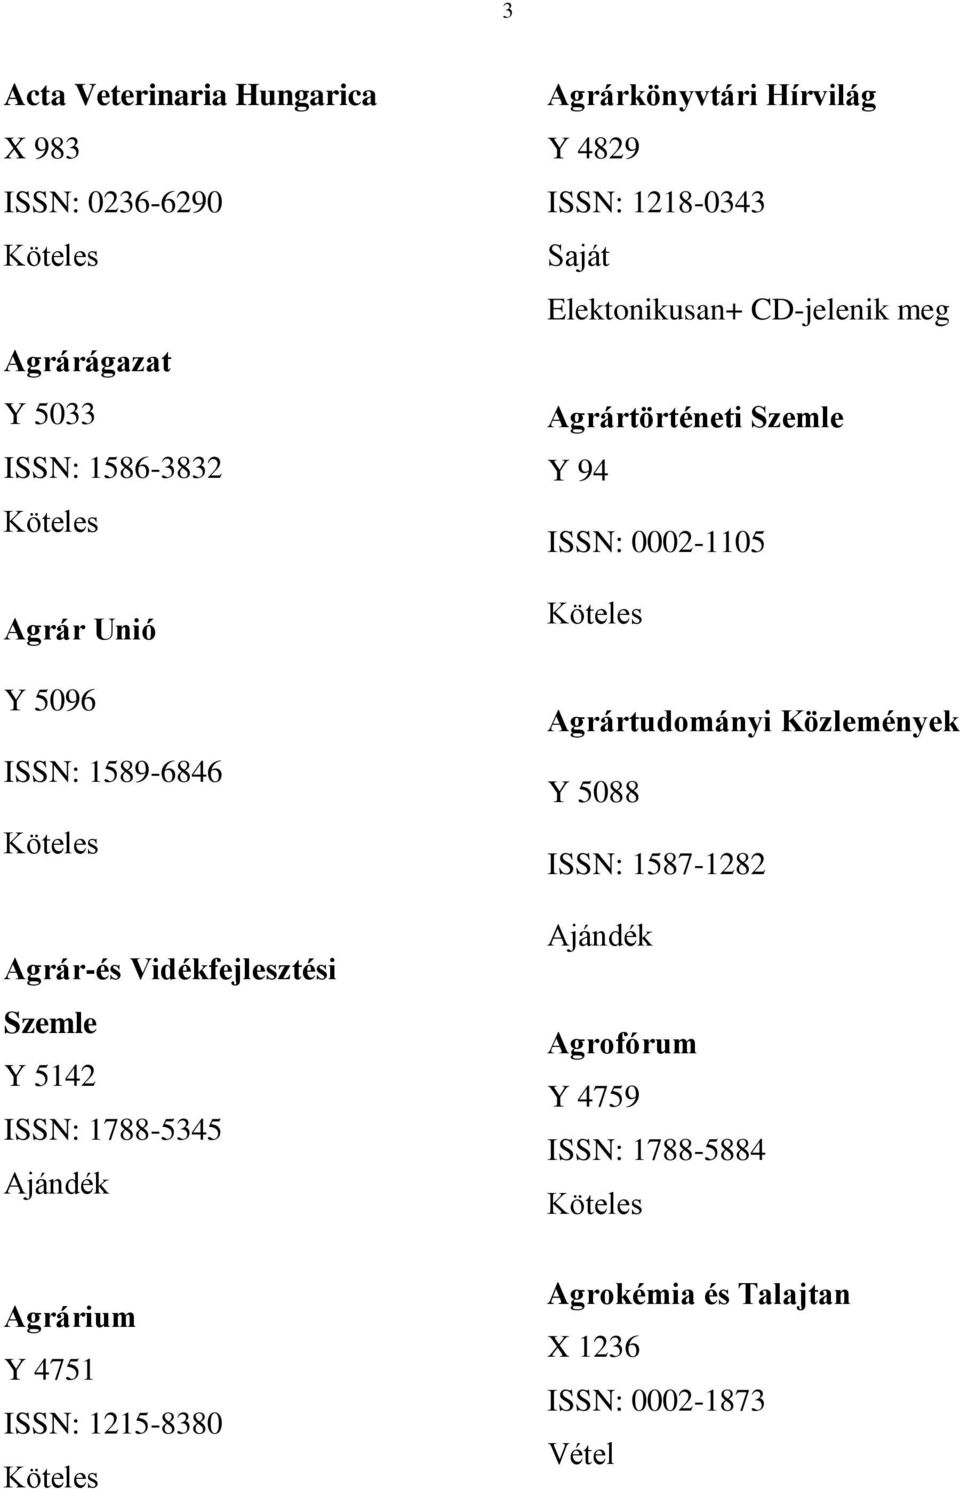 Saját Elektonikusan+ CD-jelenik meg Agrártörténeti Szemle Y 94 ISSN: 0002-1105 Agrártudományi Közlemények Y 5088